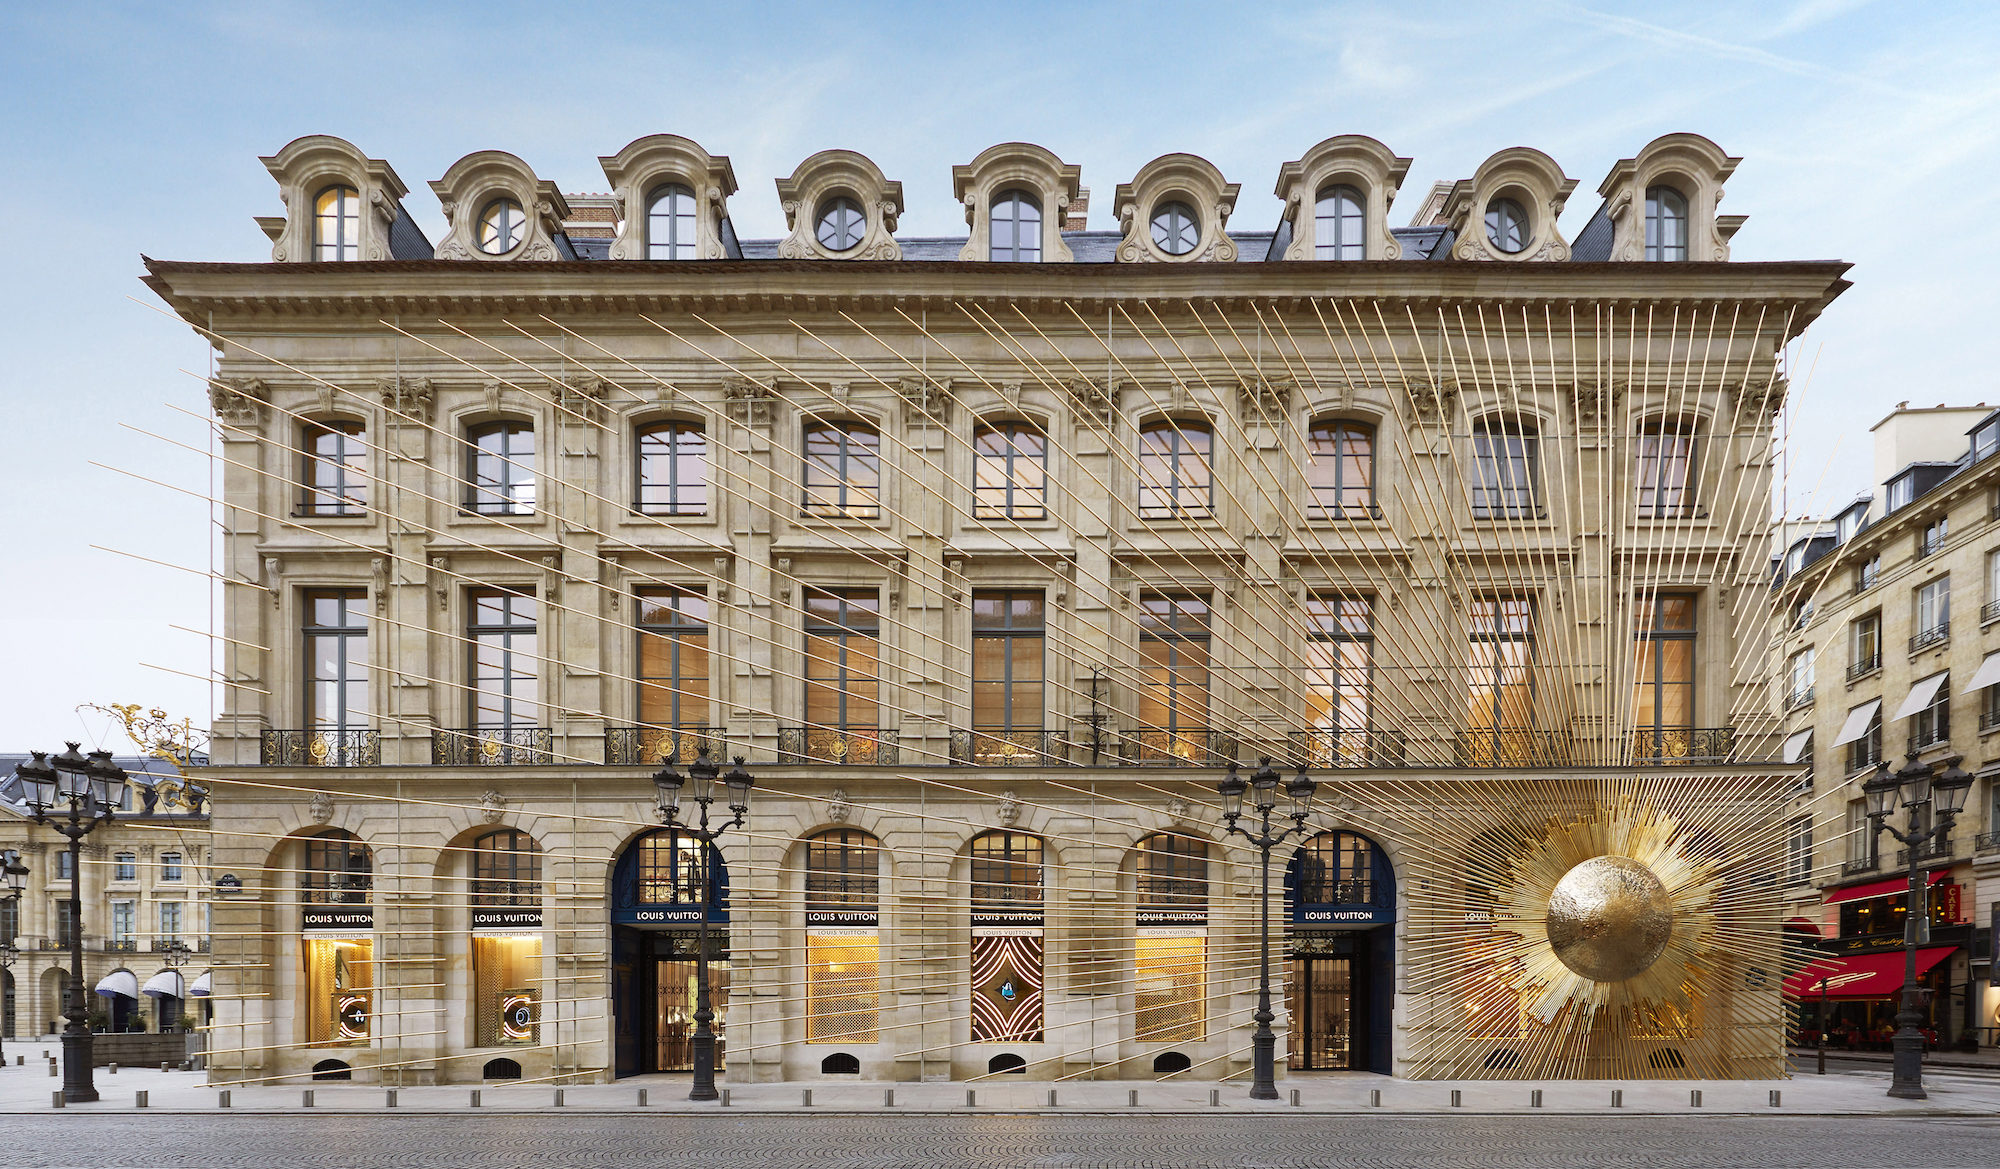 Our Petite Maison de Couture in The Louis Vuitton Paris City Guide